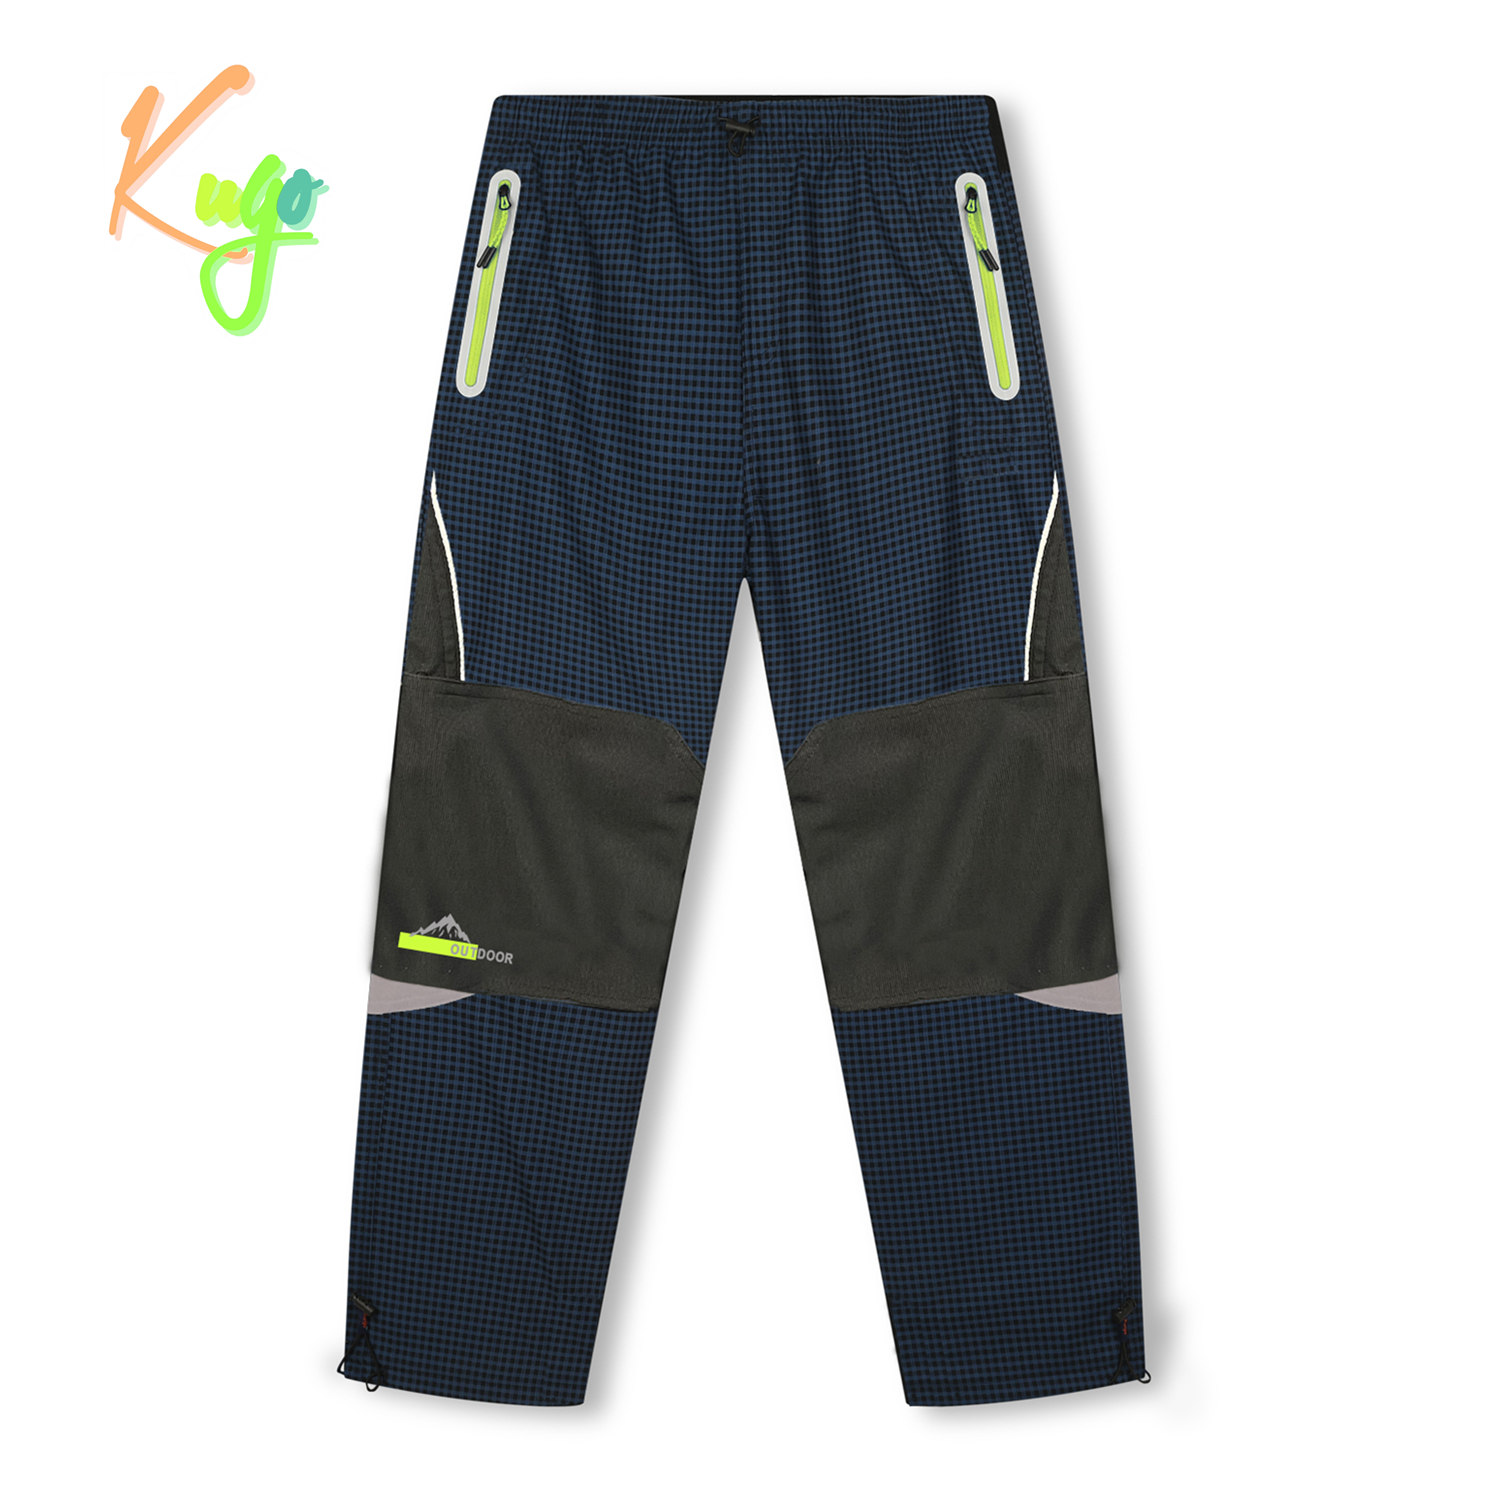 Chlapecké zateplené outdoorové kalhoty - KUGO C7772, tmavě modrá/ signální zipy Barva: Modrá tmavě, Velikost: 140